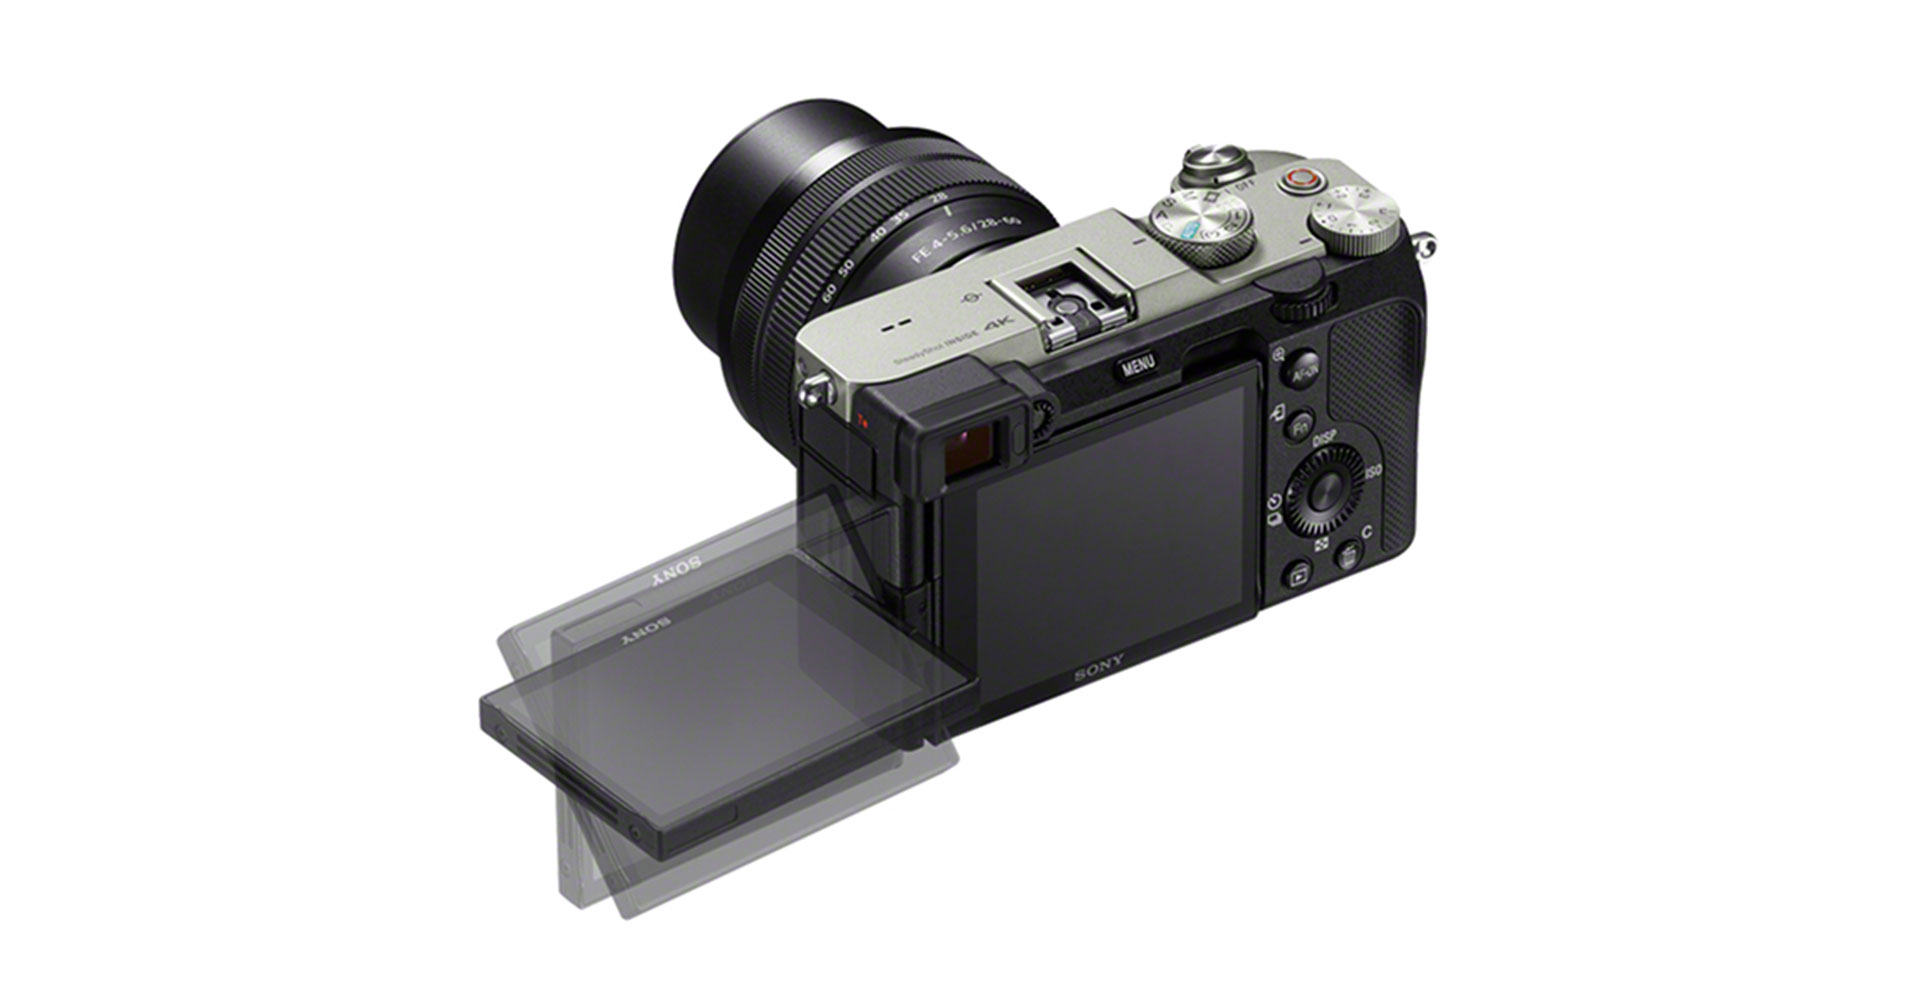 อัปเดตข่าวลือ กล้อง Sony มิเรอร์เลส APS-C รุ่นใหม่ ใช้เซนเซอร์ 24 ล้านพิกเซลเท่าเดิม เน้นสาย Vlog